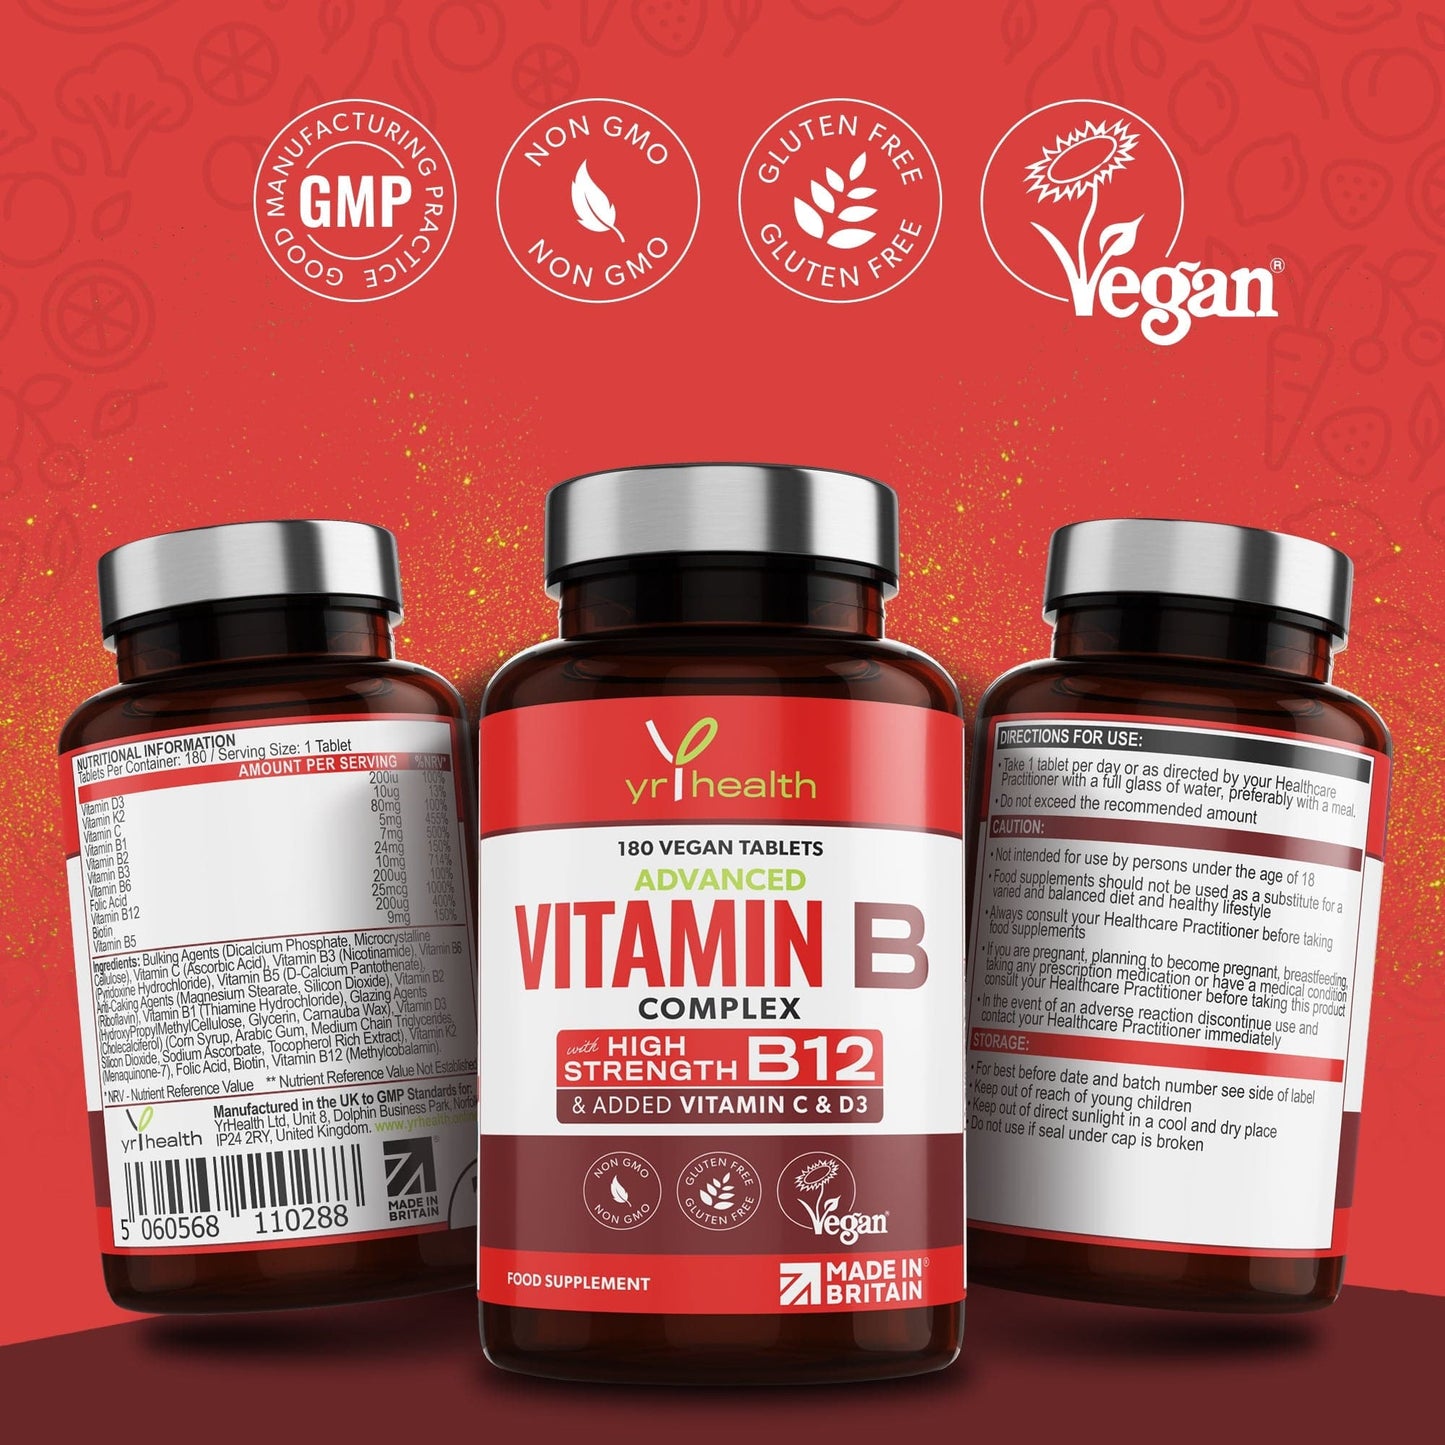 Vitamin B Complex - 180 Vegan Tablets